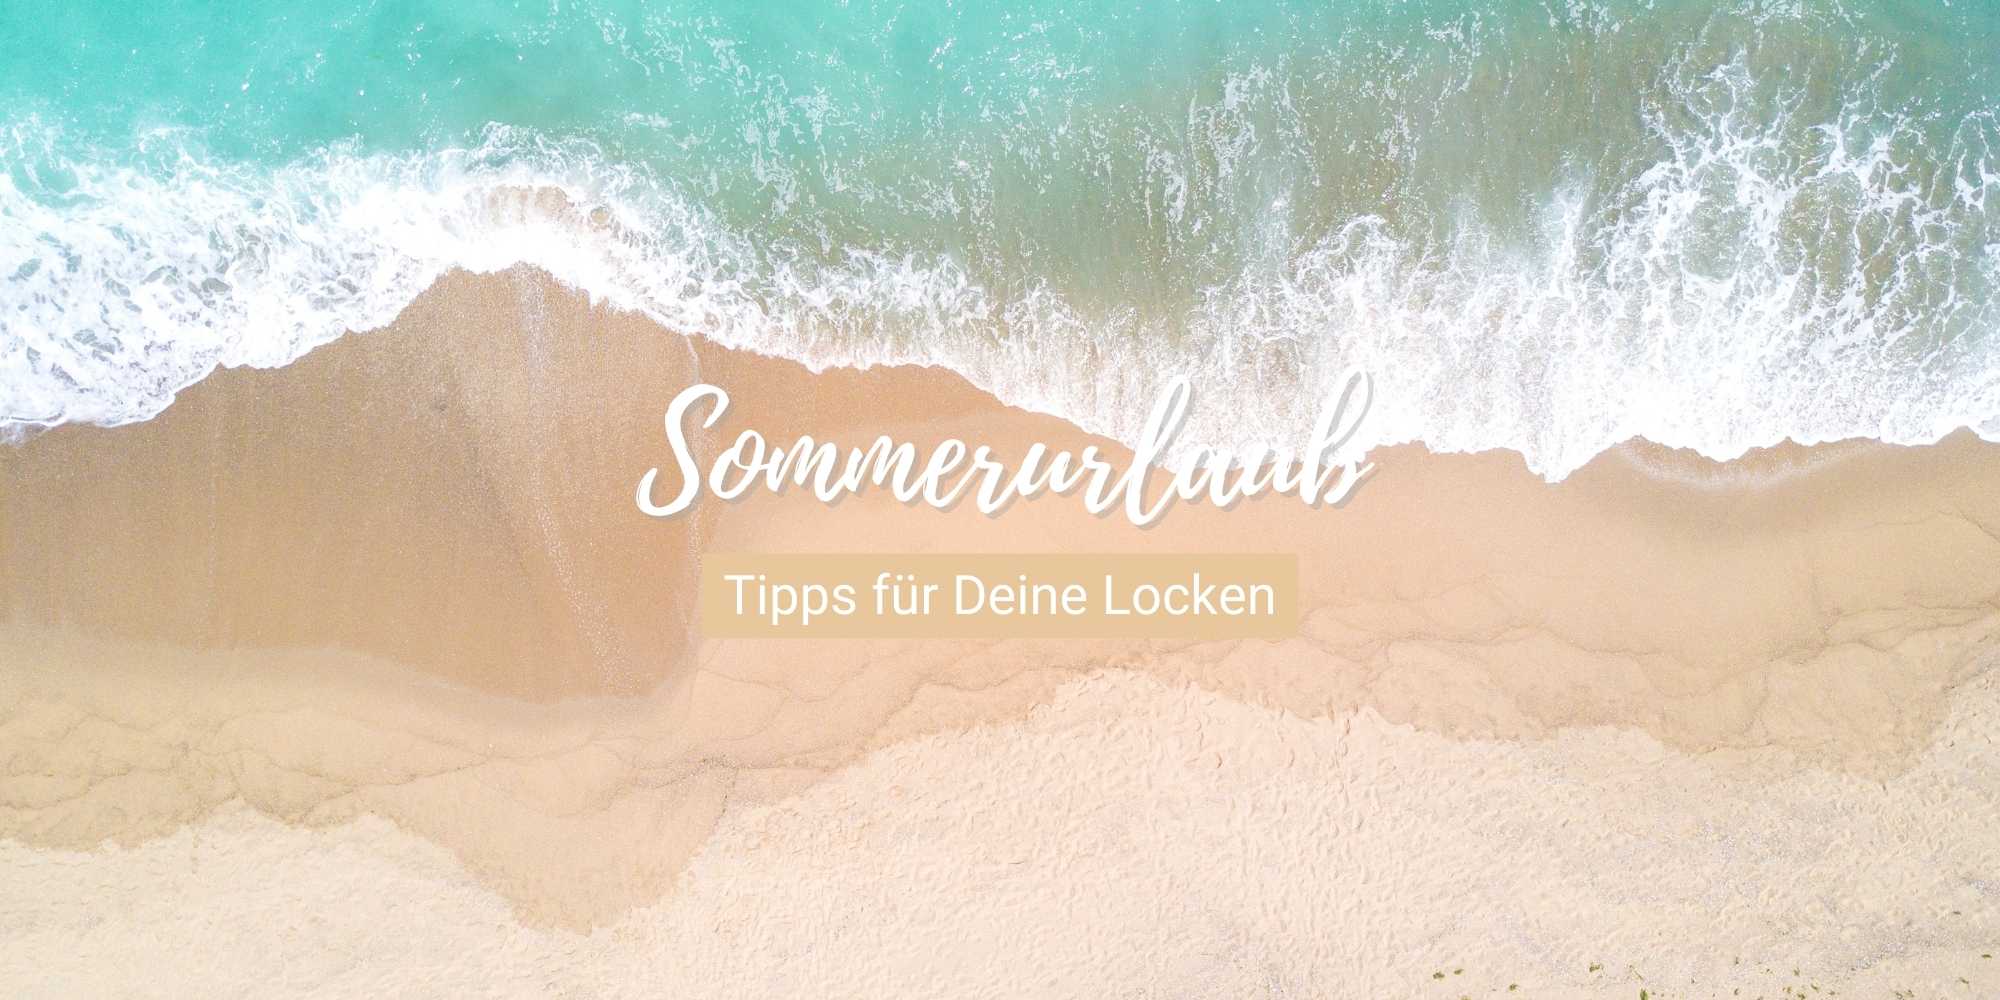 Tipps für Deine Locken im Sommerurlaub